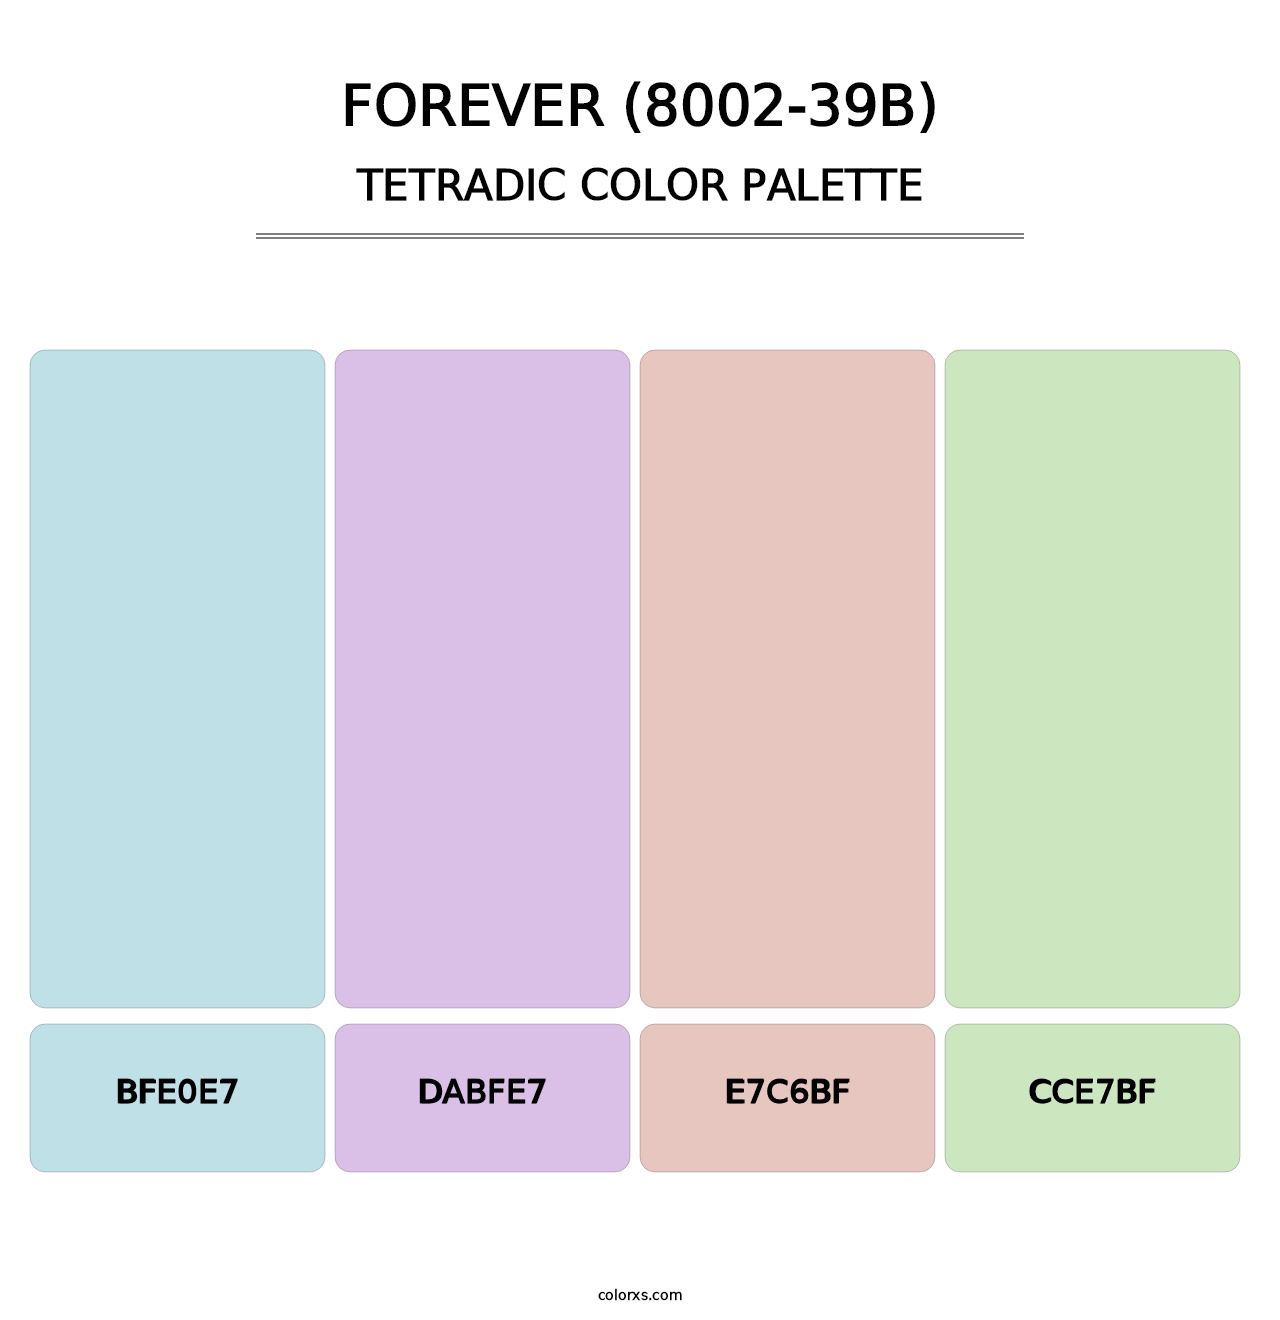 Forever (8002-39B) - Tetradic Color Palette